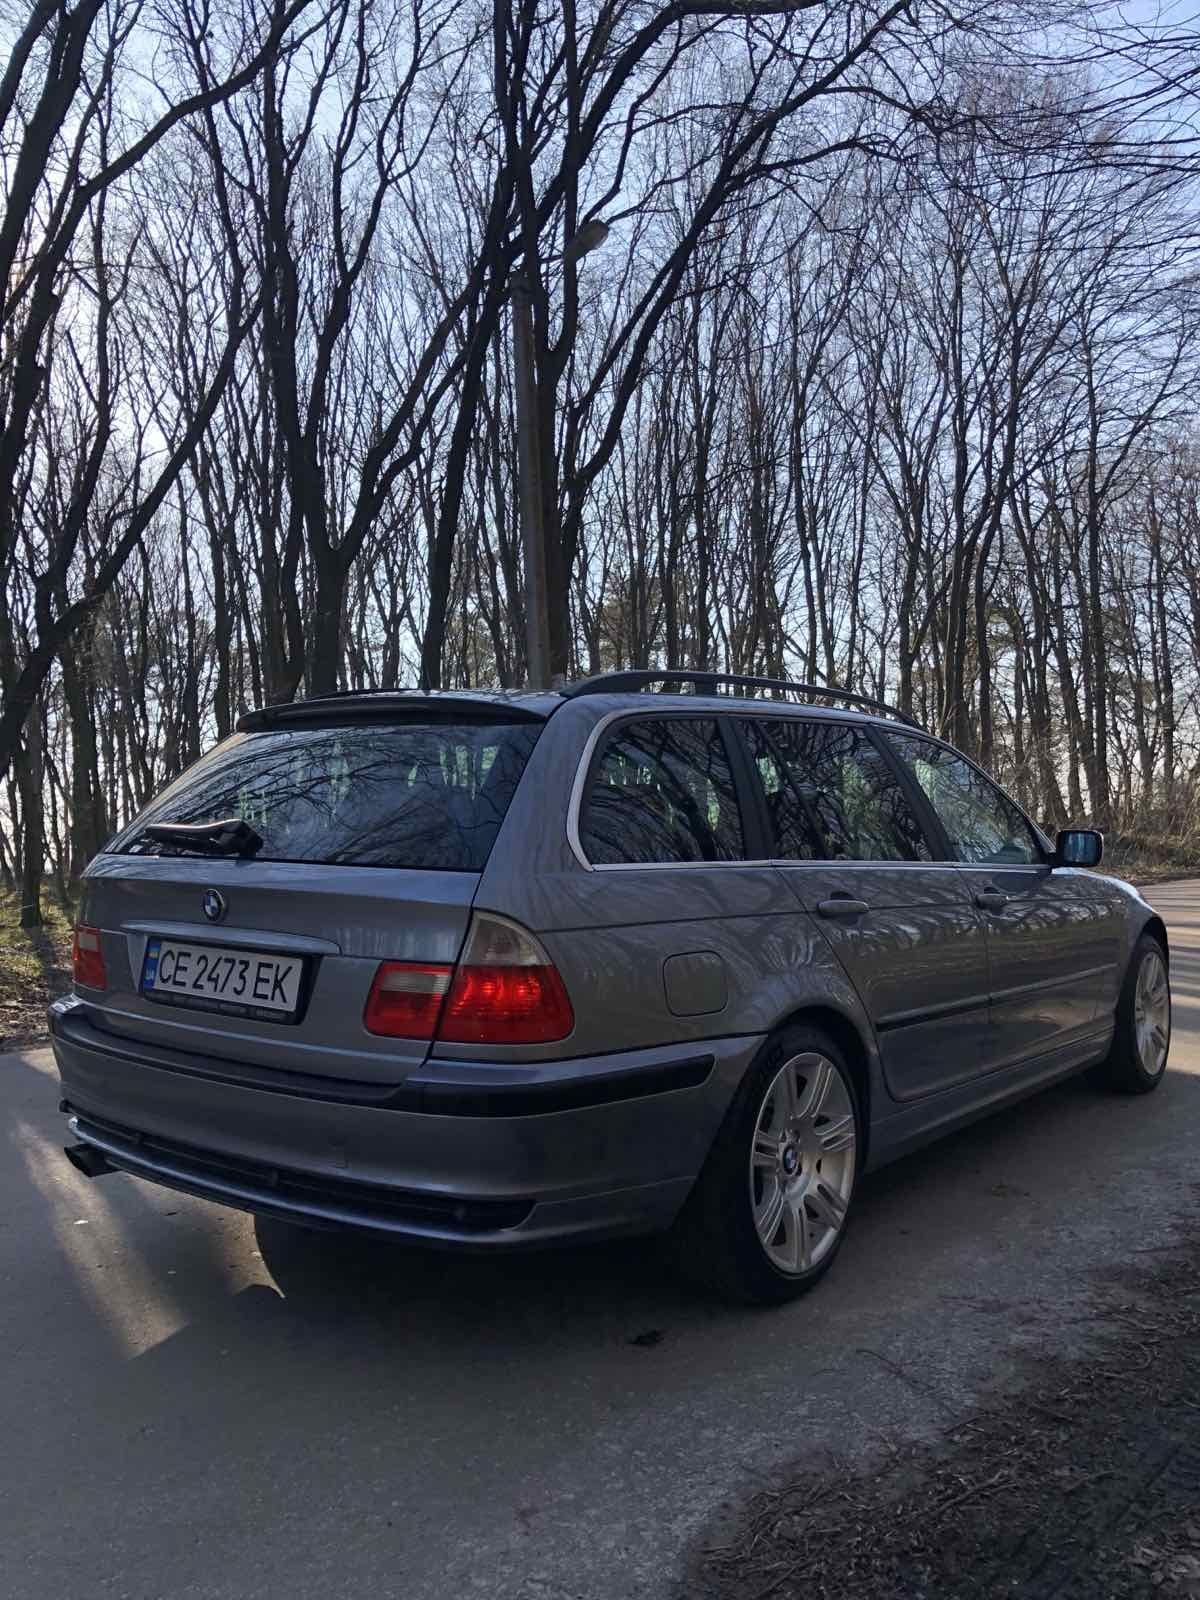 BMW E46 330xdrive М57
Авто в близькому до ідеального стану, без чека))